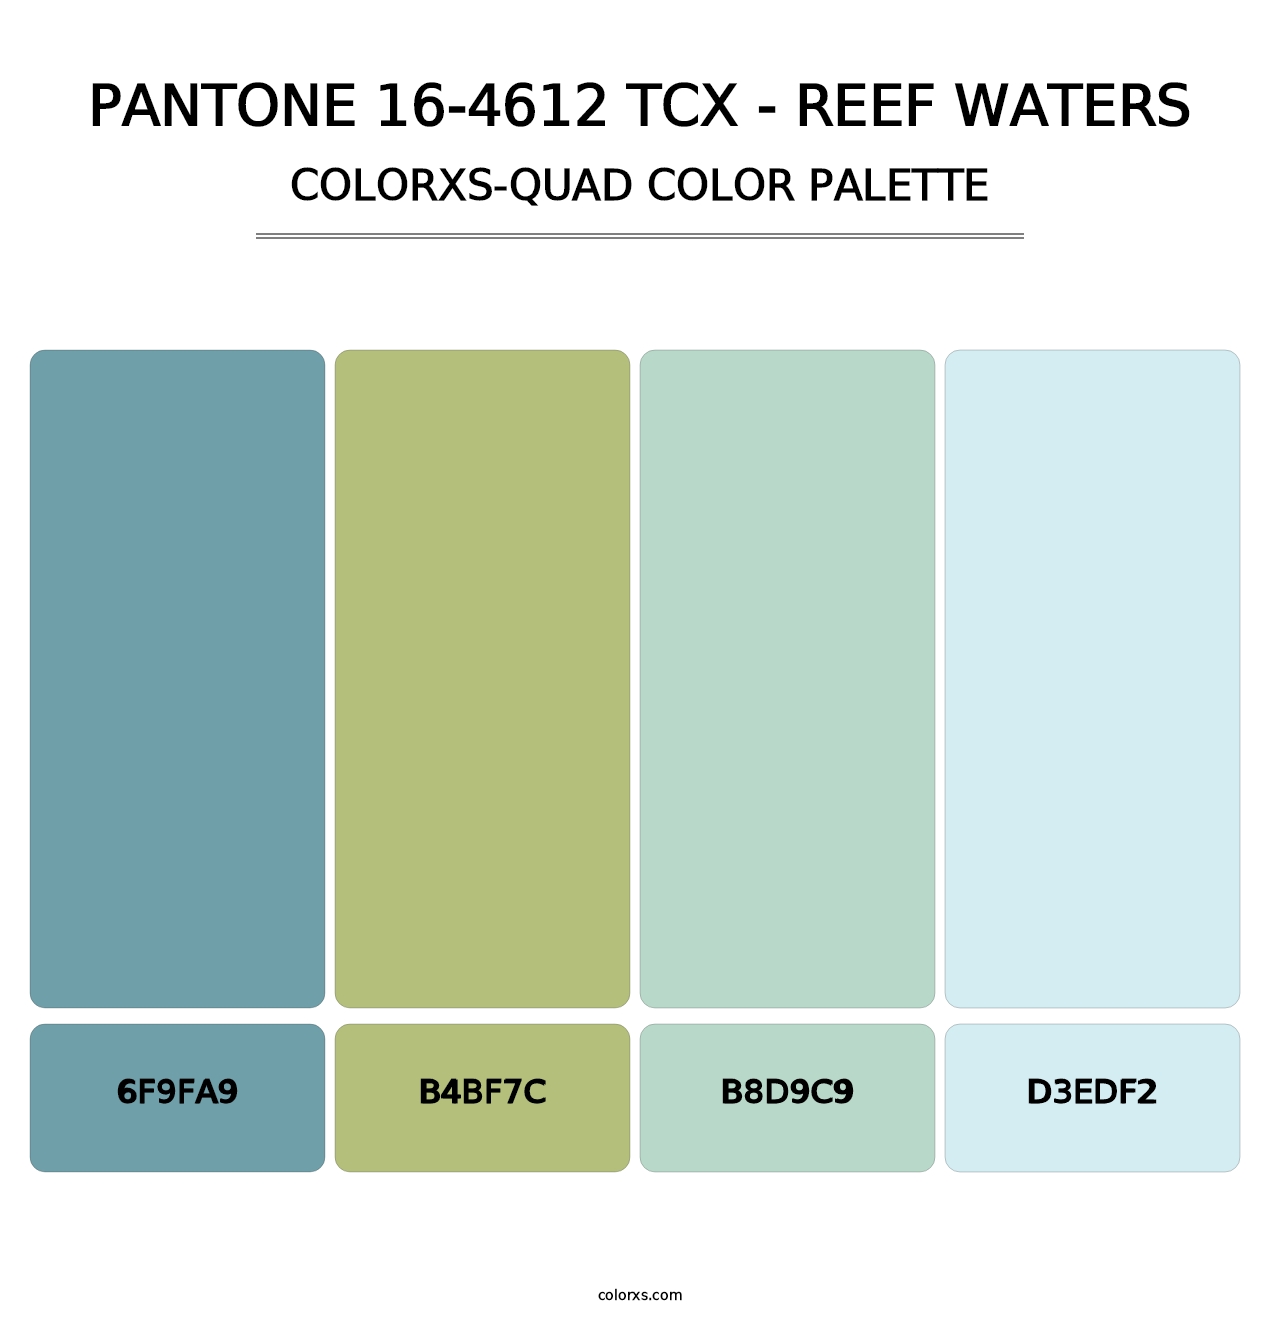 PANTONE 16-4612 TCX - Reef Waters - Colorxs Quad Palette